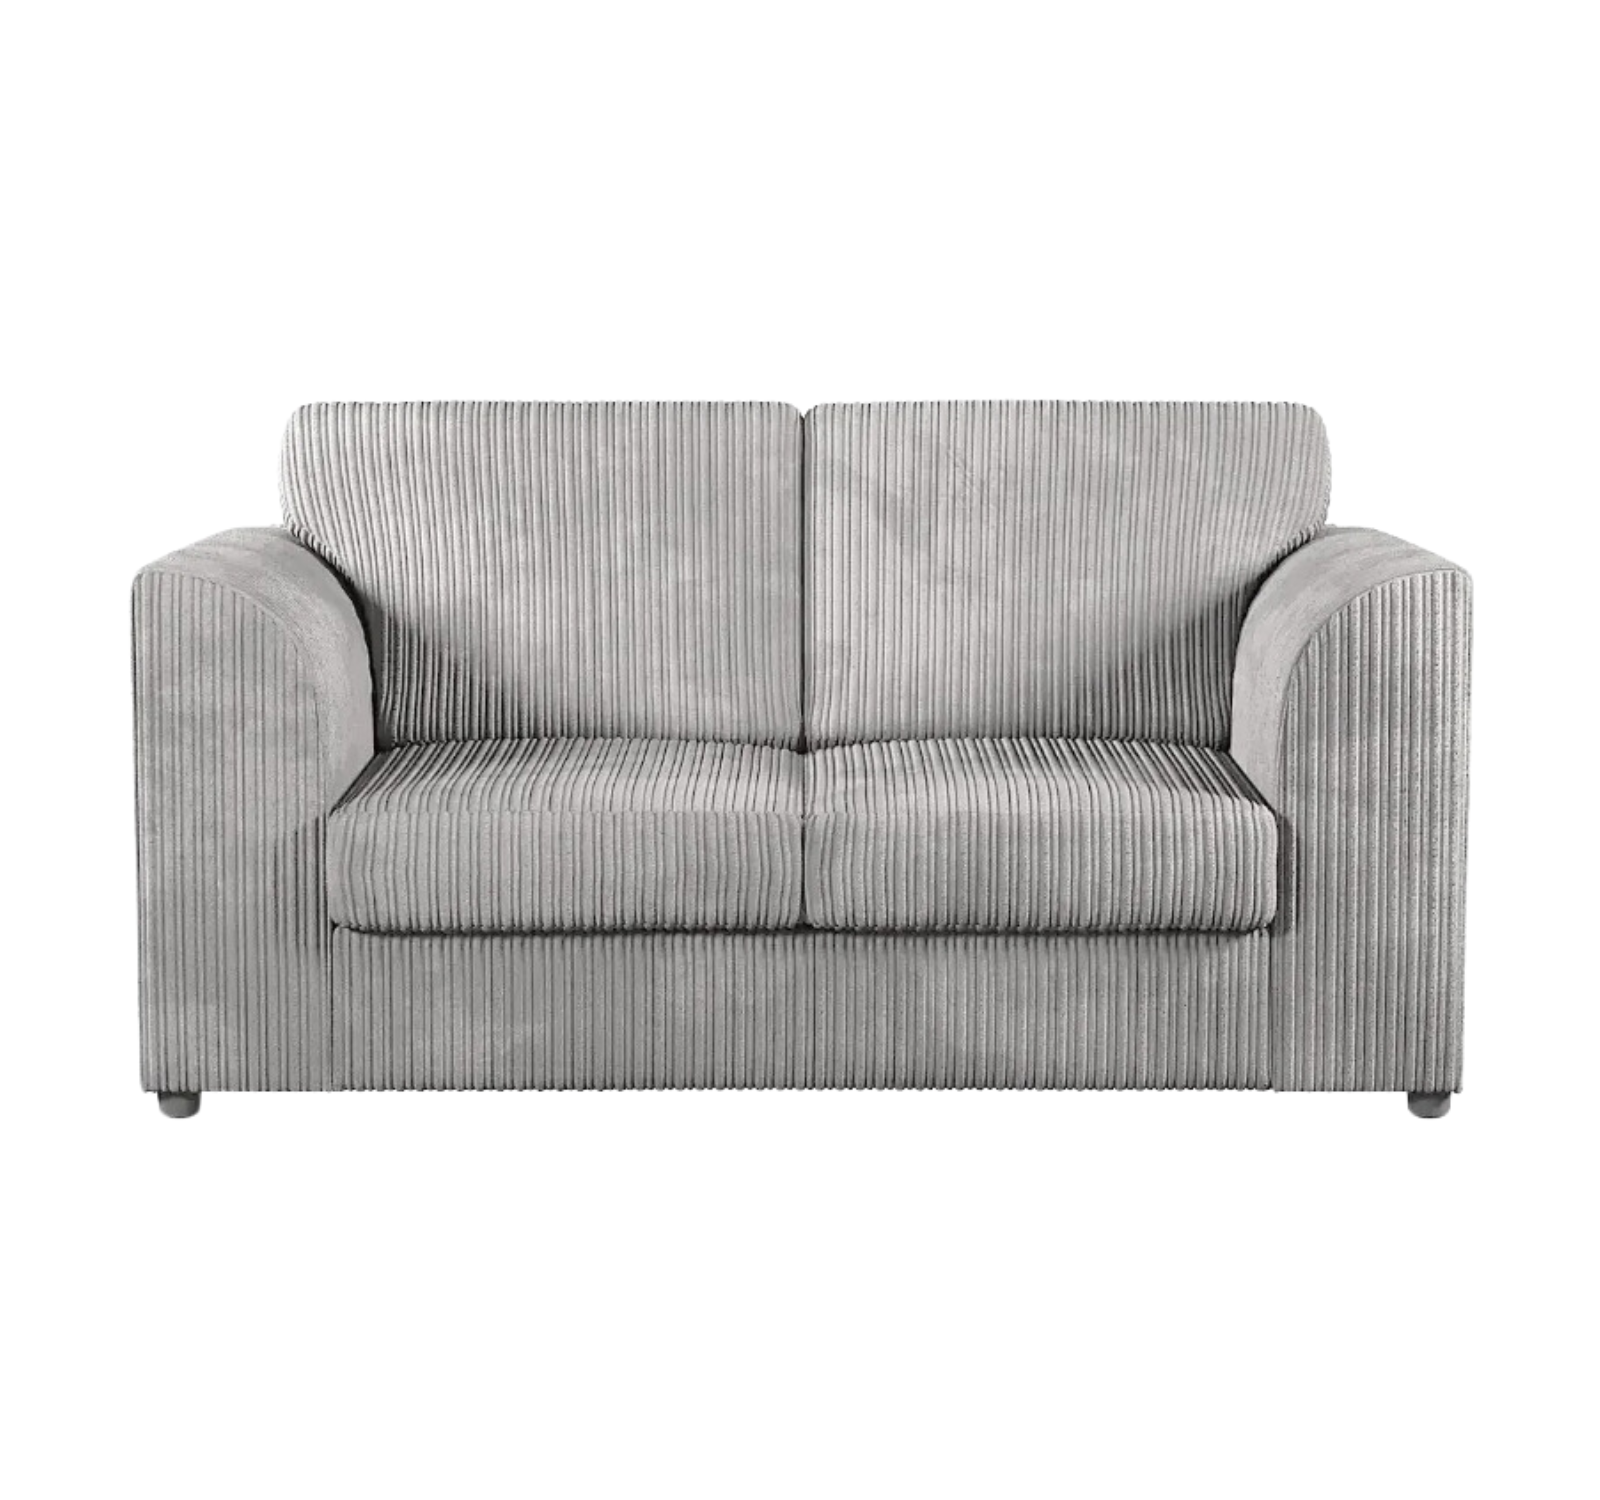 Jumbo Cord 2 Seater Sofa In Cord Fabric (High Back)